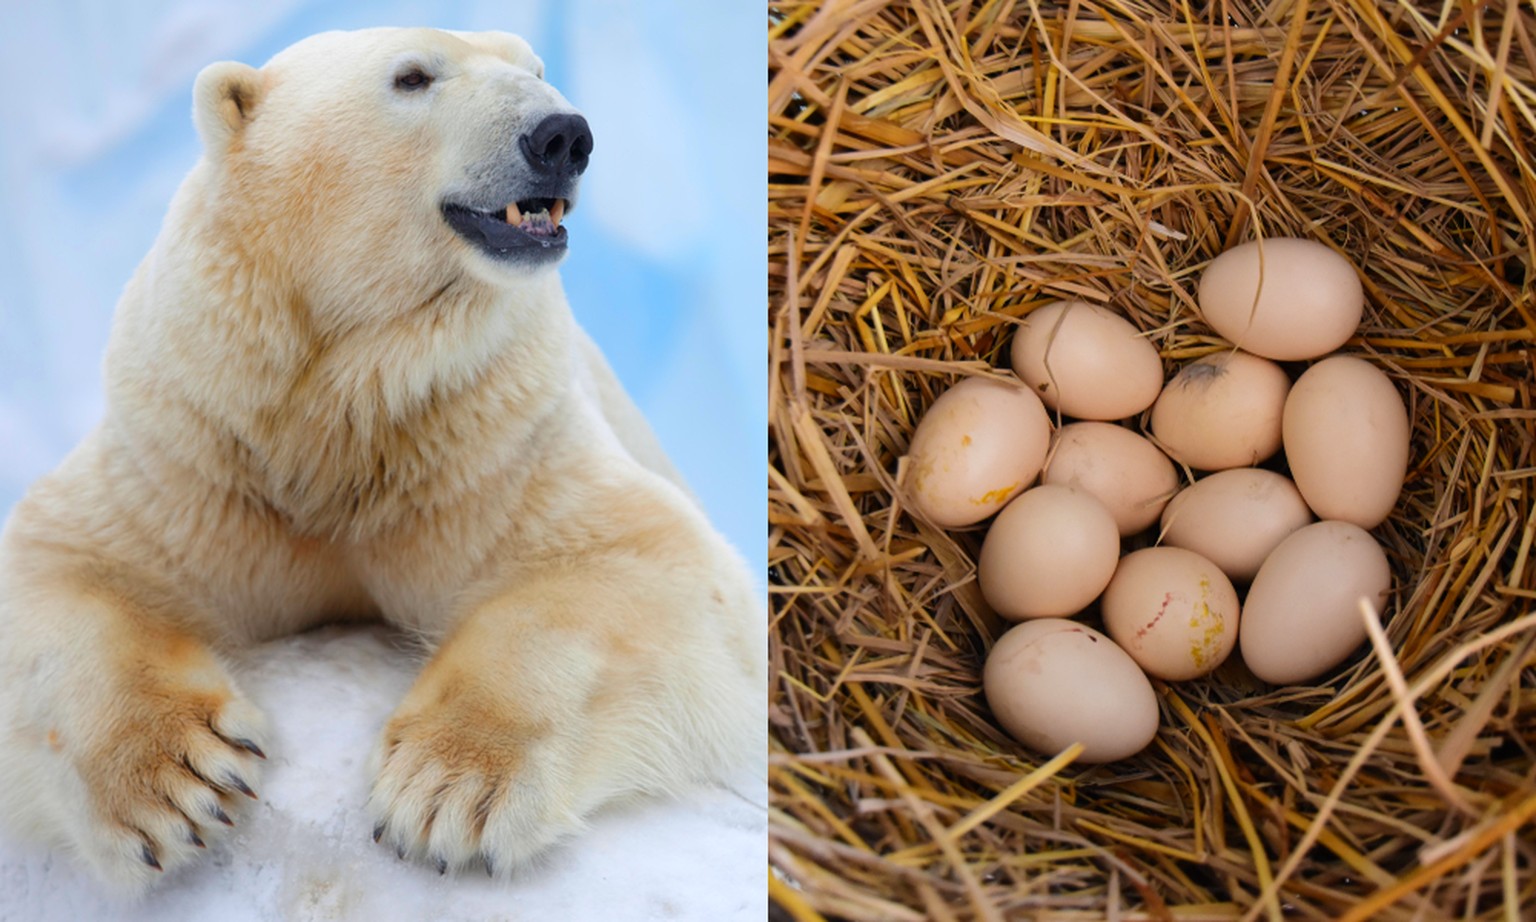 Une étude publiée en août 2020 dans <em>Nature Climate Change</em> estimait que les ours polaires pourraient s'éteindre par manque de nourriture d'ici la fin du siècle.